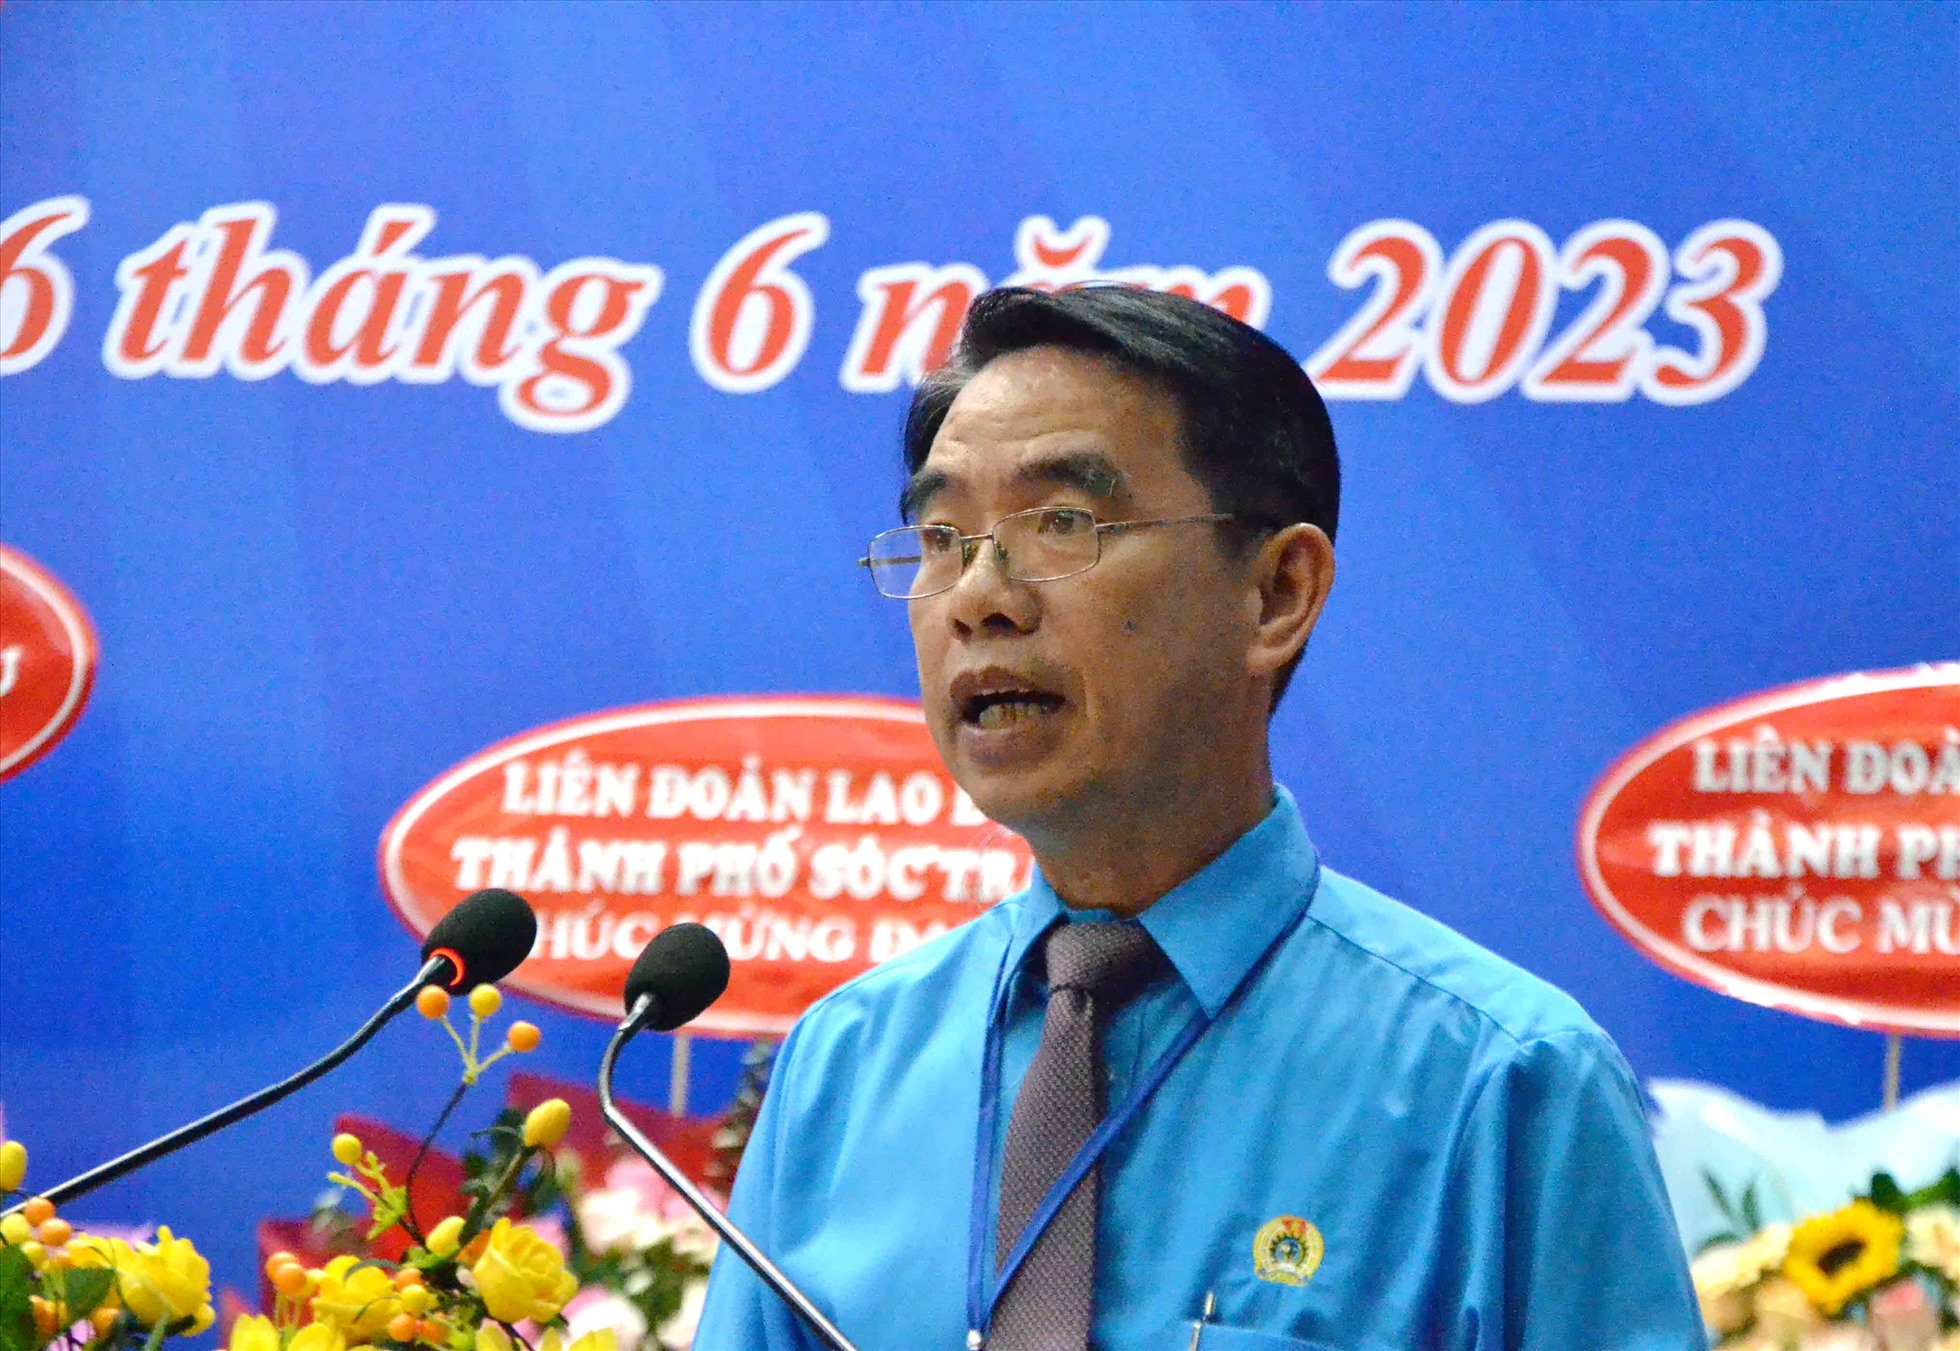 Ông Trương Văn Chiêm tái đắc cử Chủ tịch LĐLĐ TP Long Xuyên nhiệm kỳ 2023-2028. Ảnh: Lâm Điền